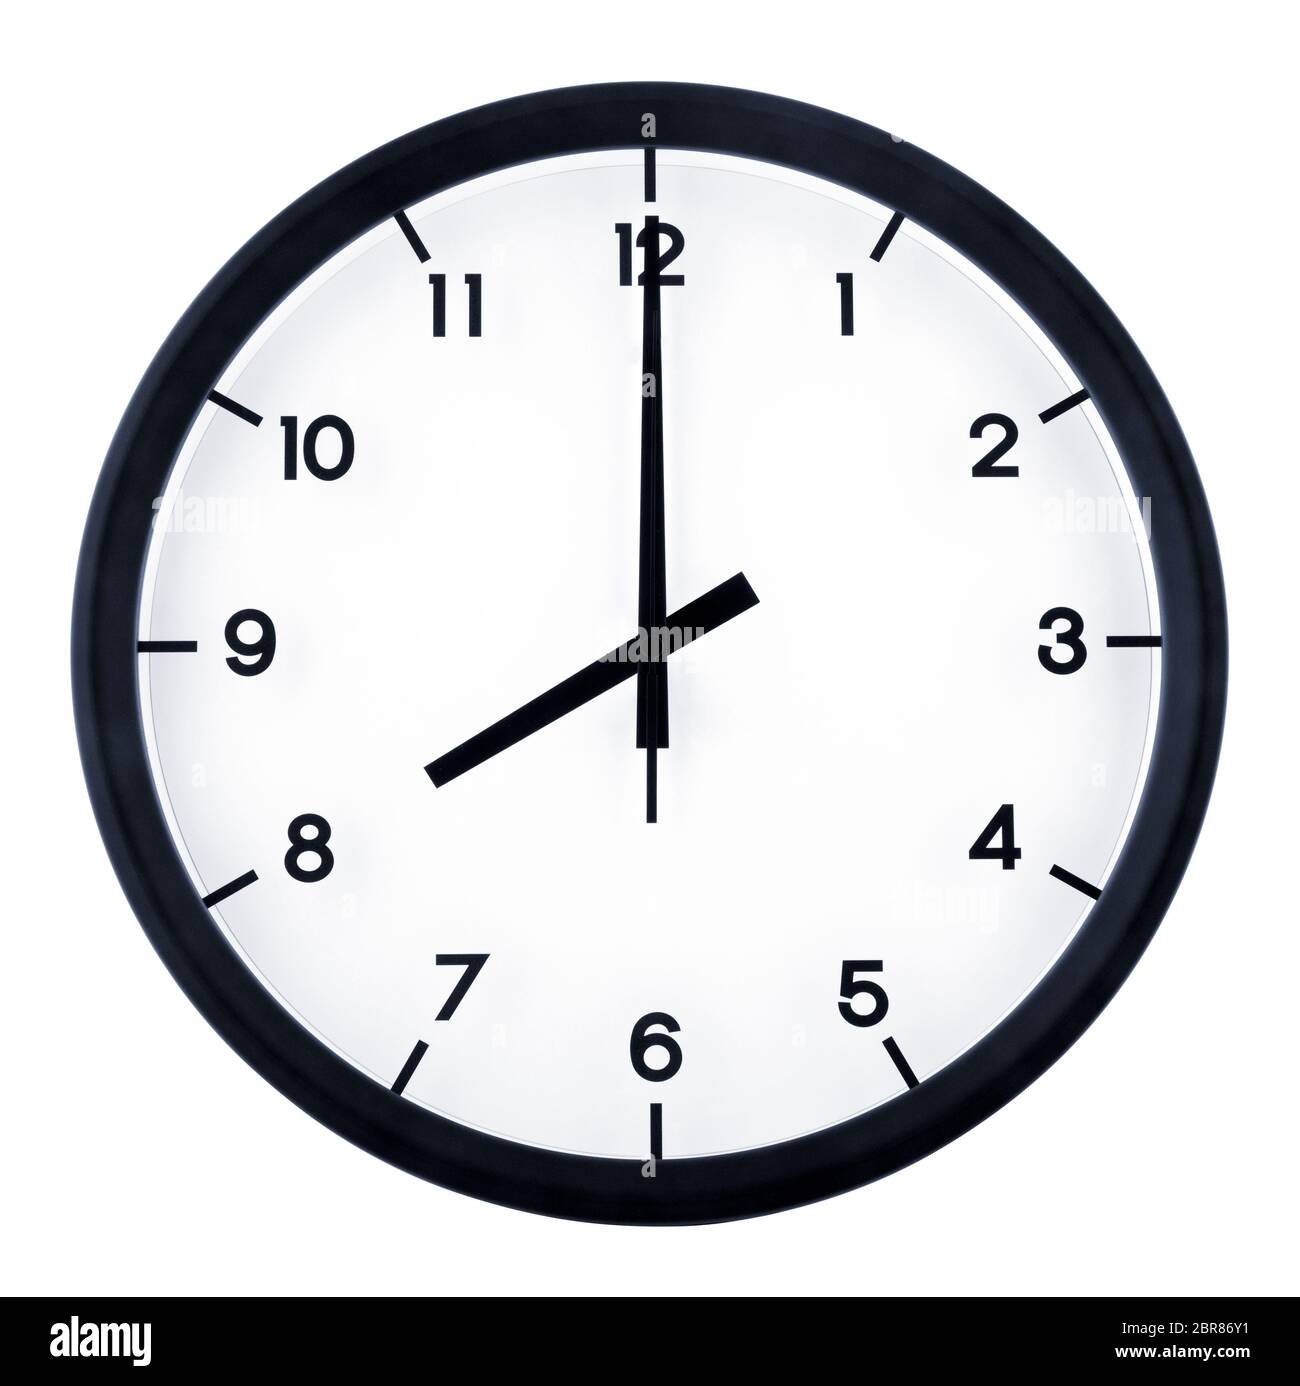 Klassische analoge Uhr zeigt auf 08:00, isoliert auf weißem Hintergrund  Stockfotografie - Alamy